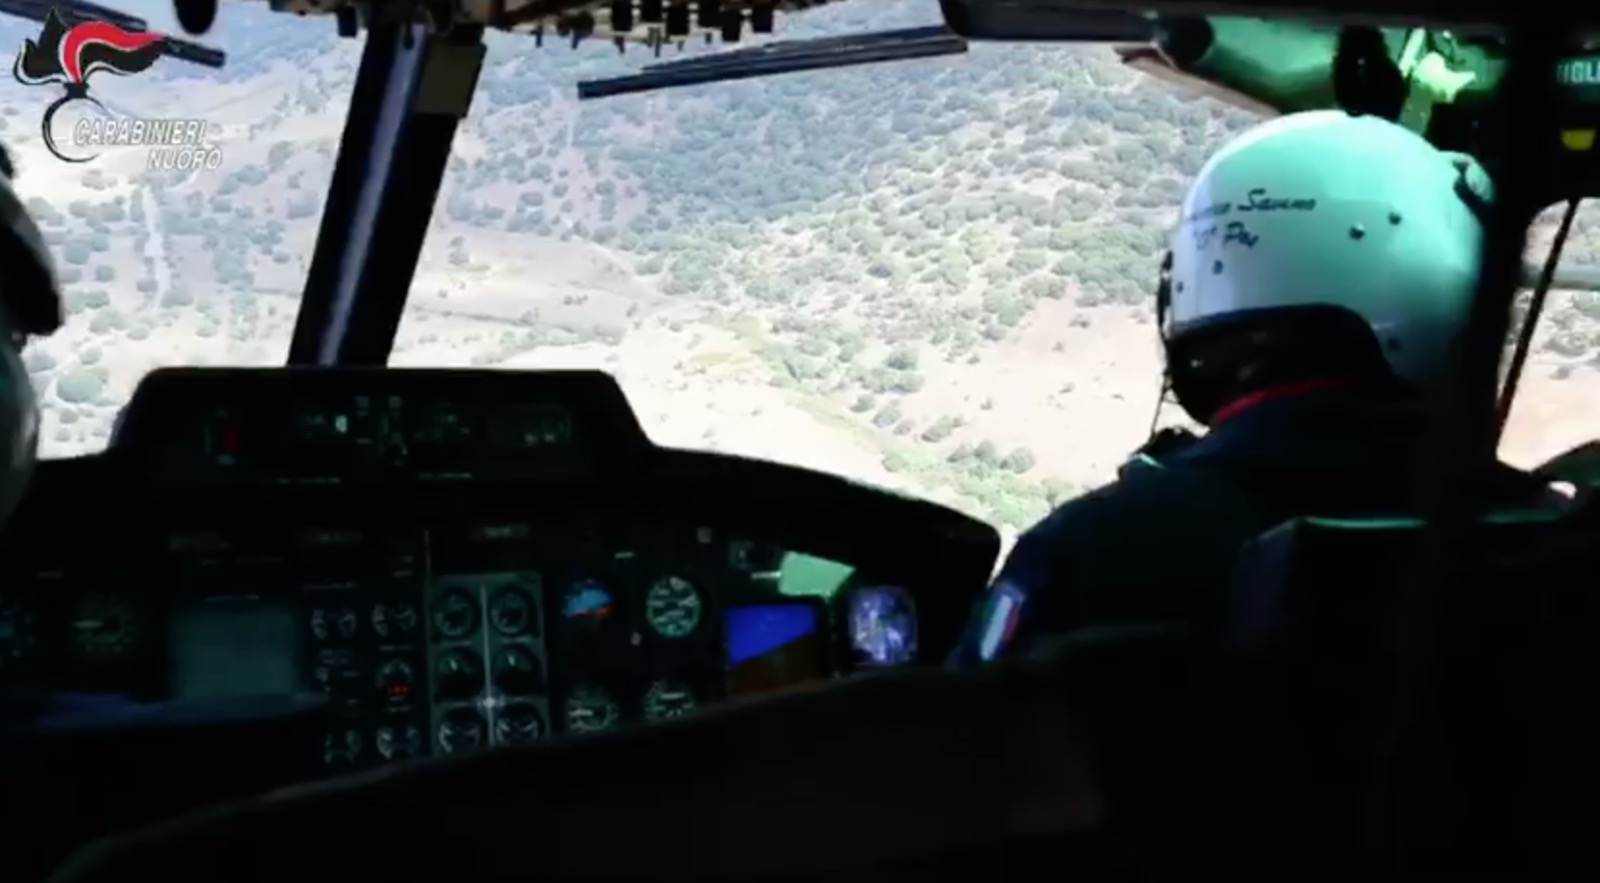 *VIDEO* Budoni, maxi piantagioni: le immagini dall'elicottero